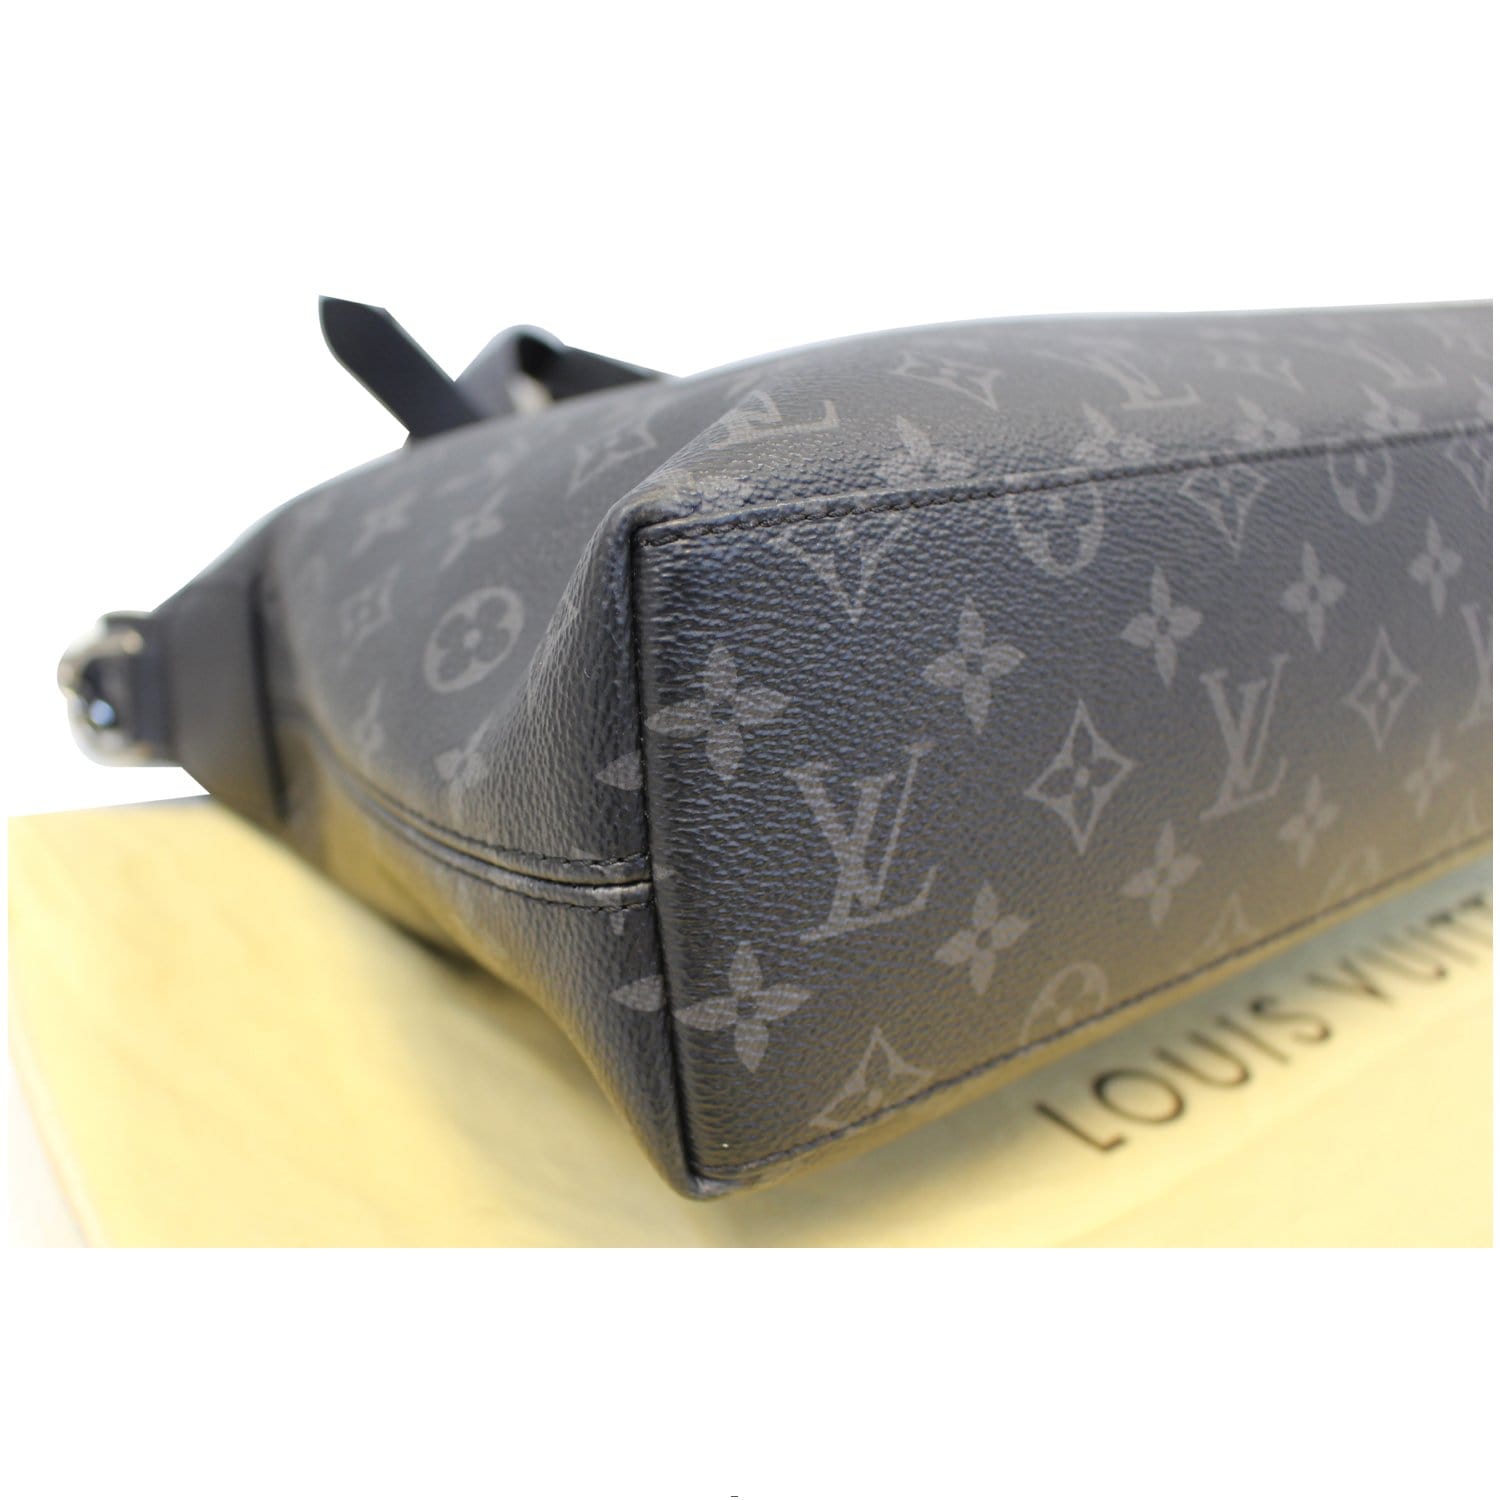 LOUIS VUITTON Briefcase Explorer Monogram Eclipse Shoulder Bag-US